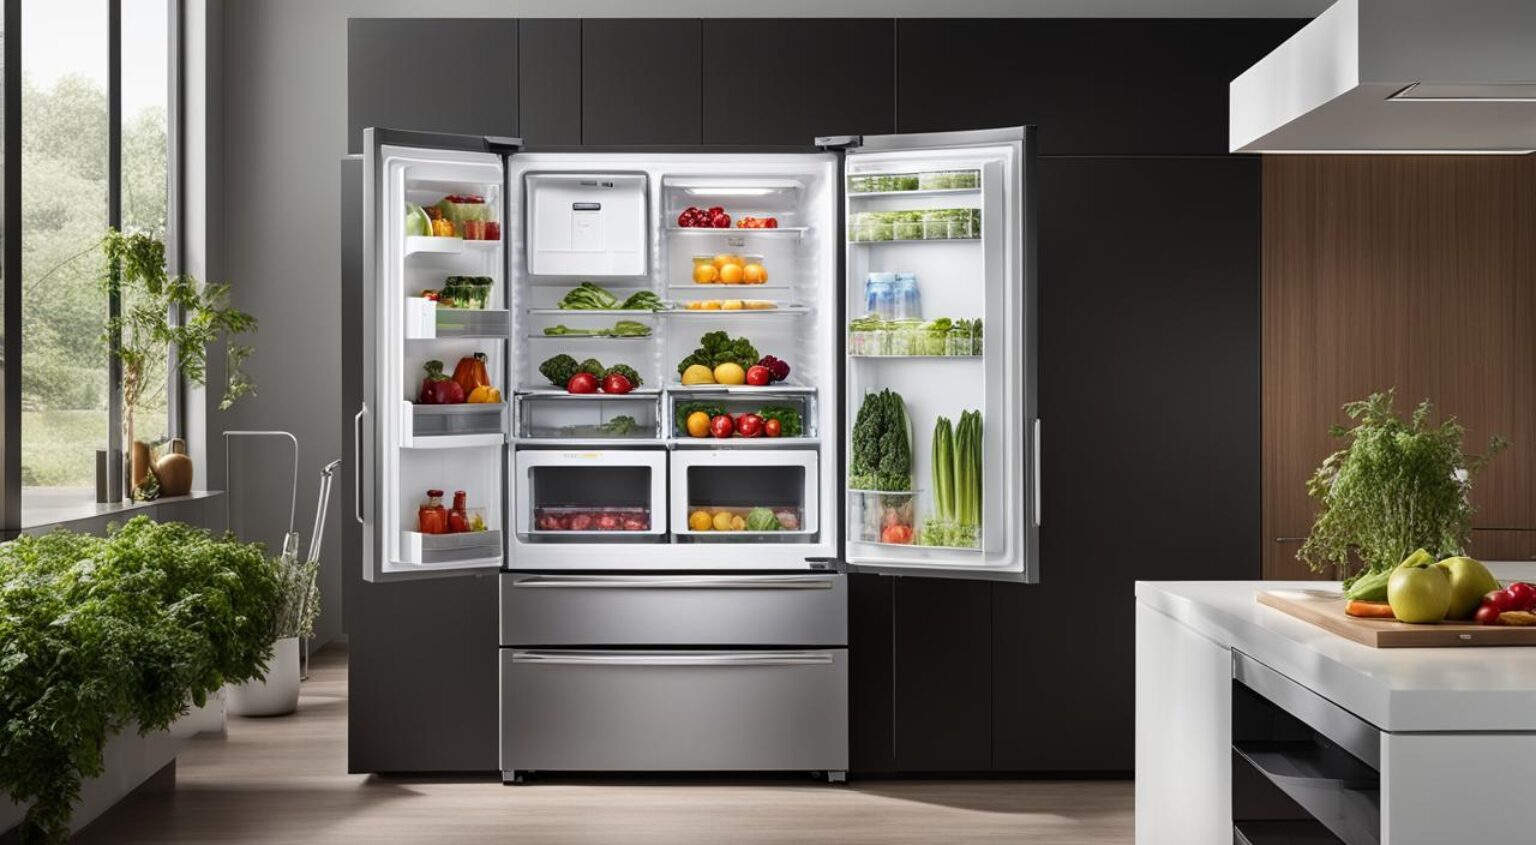 Qual é a marca da geladeira que consome menos energia